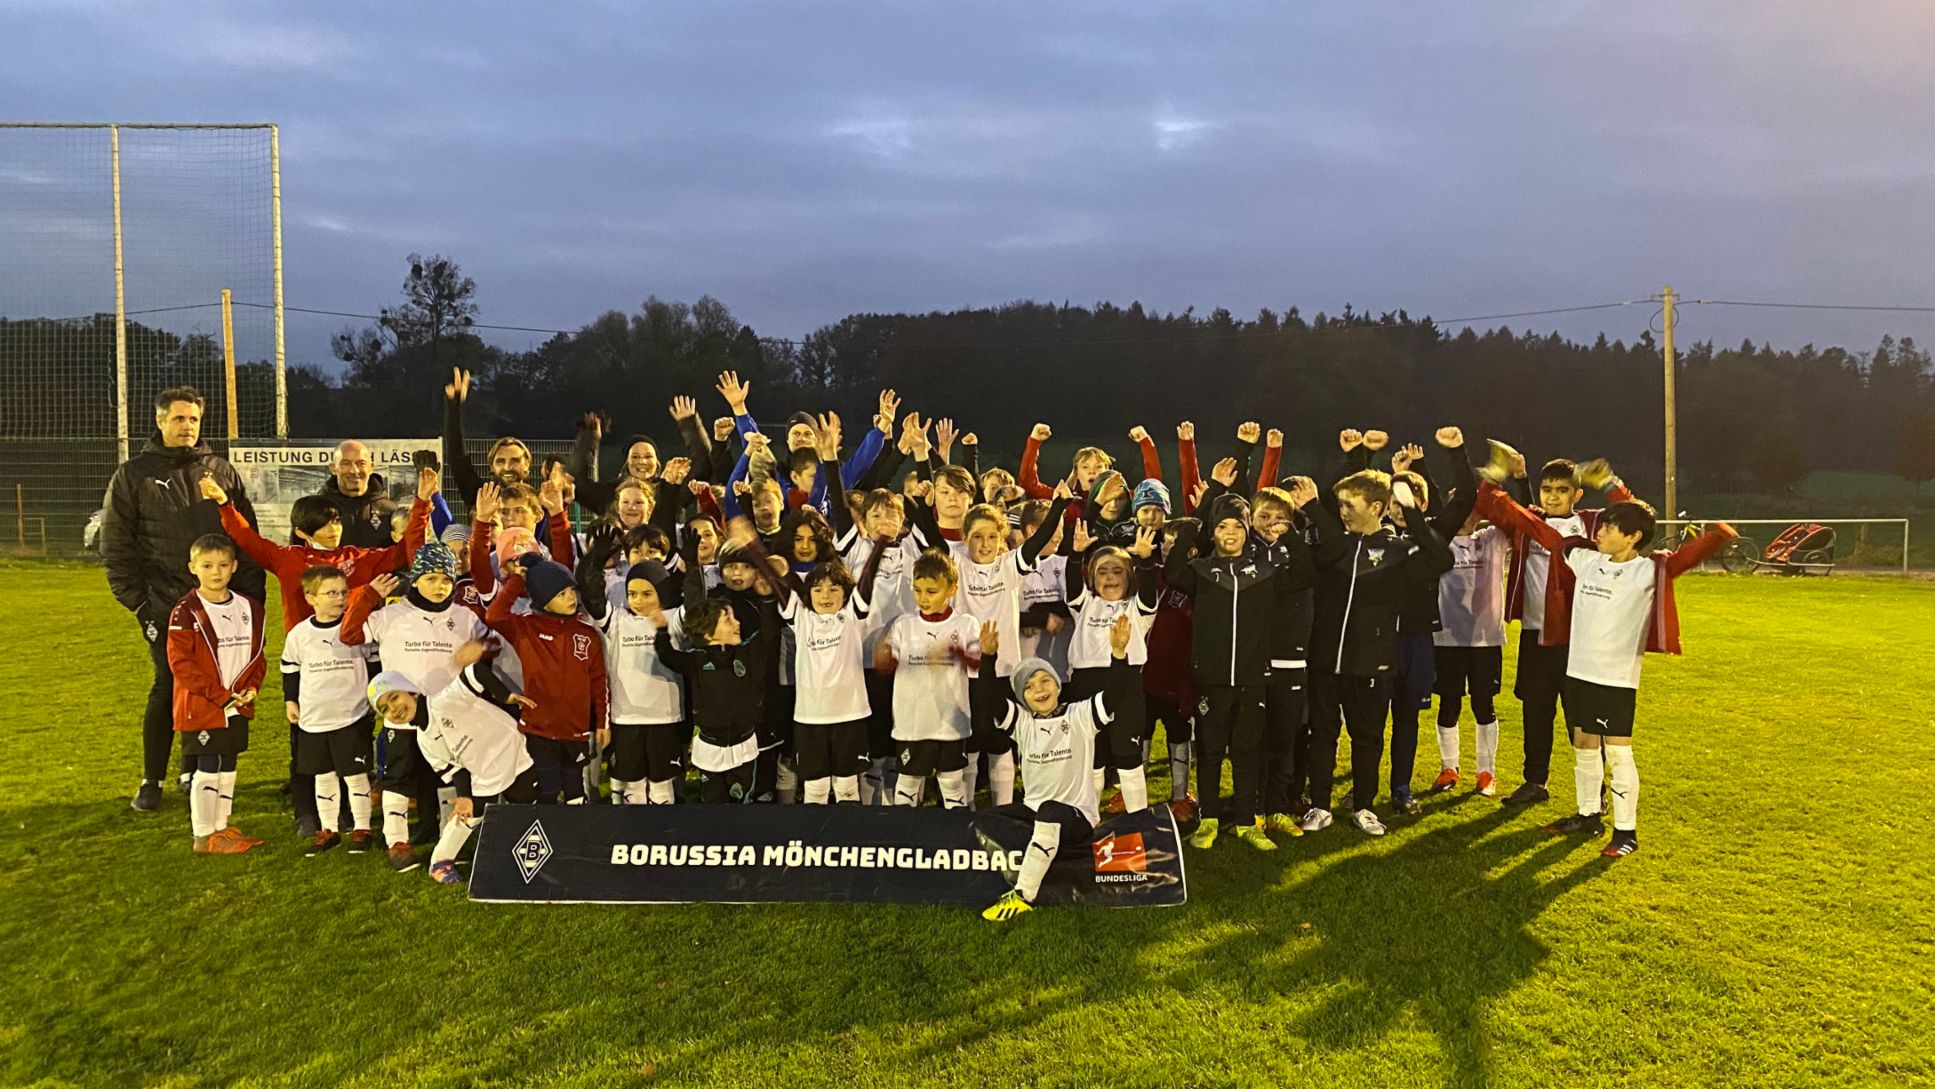 Fohlen Fußballschule, Borussia Mönchengladbach, 2022, Porsche AG